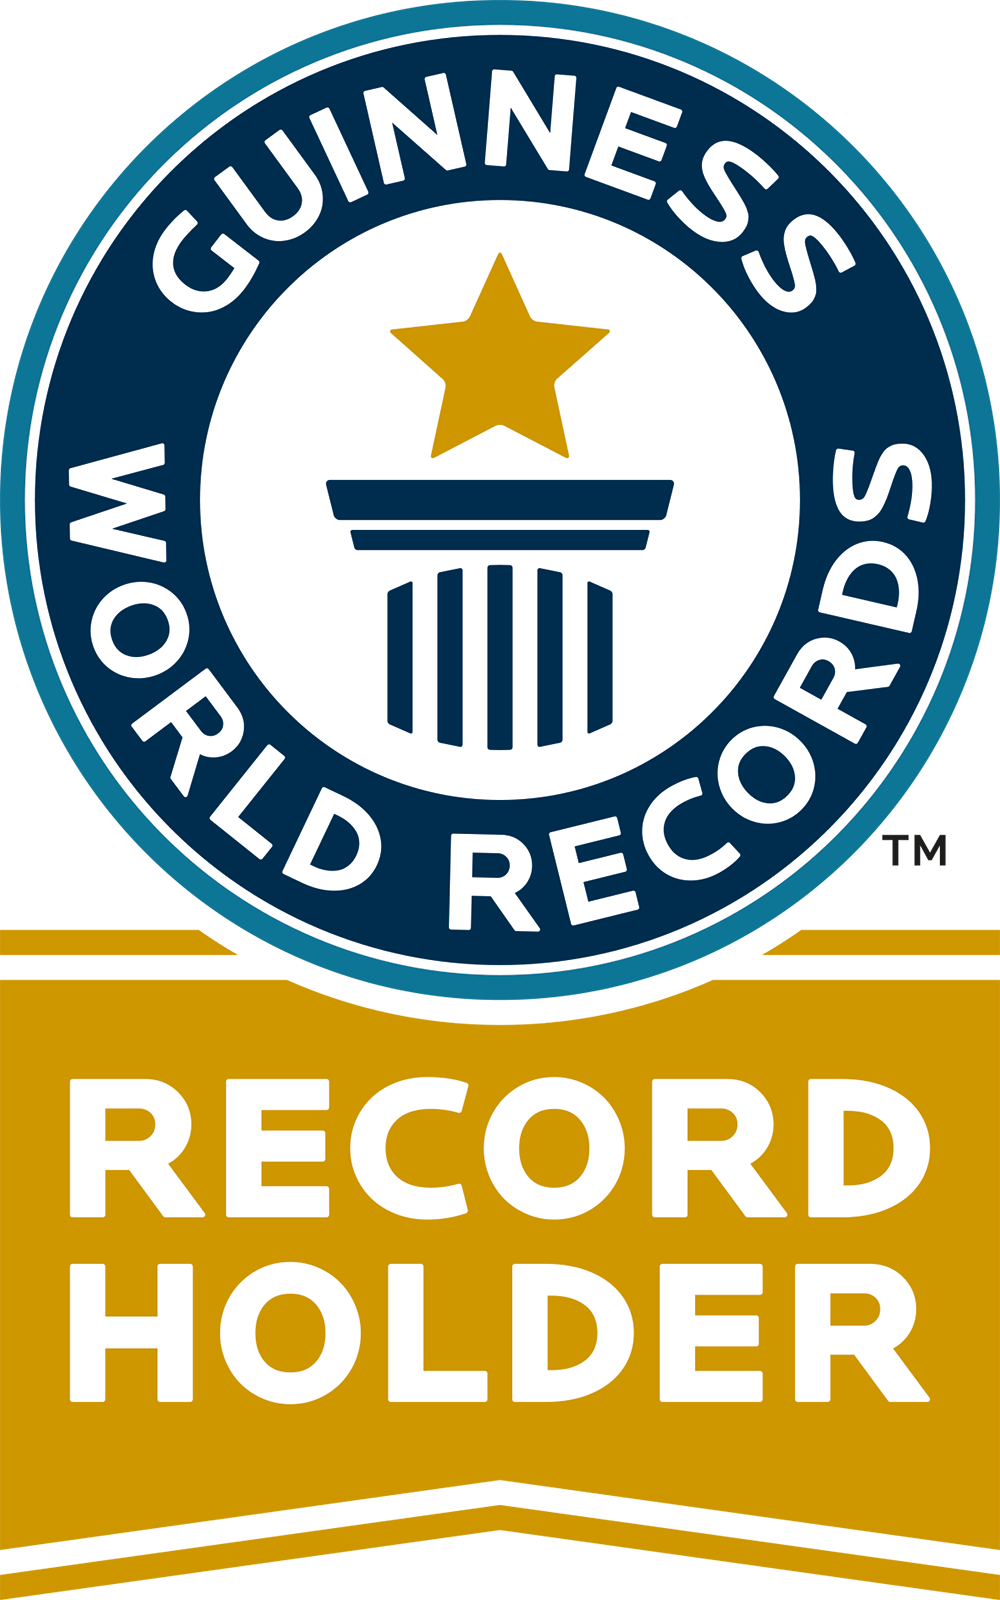 Guinness World Records® logo